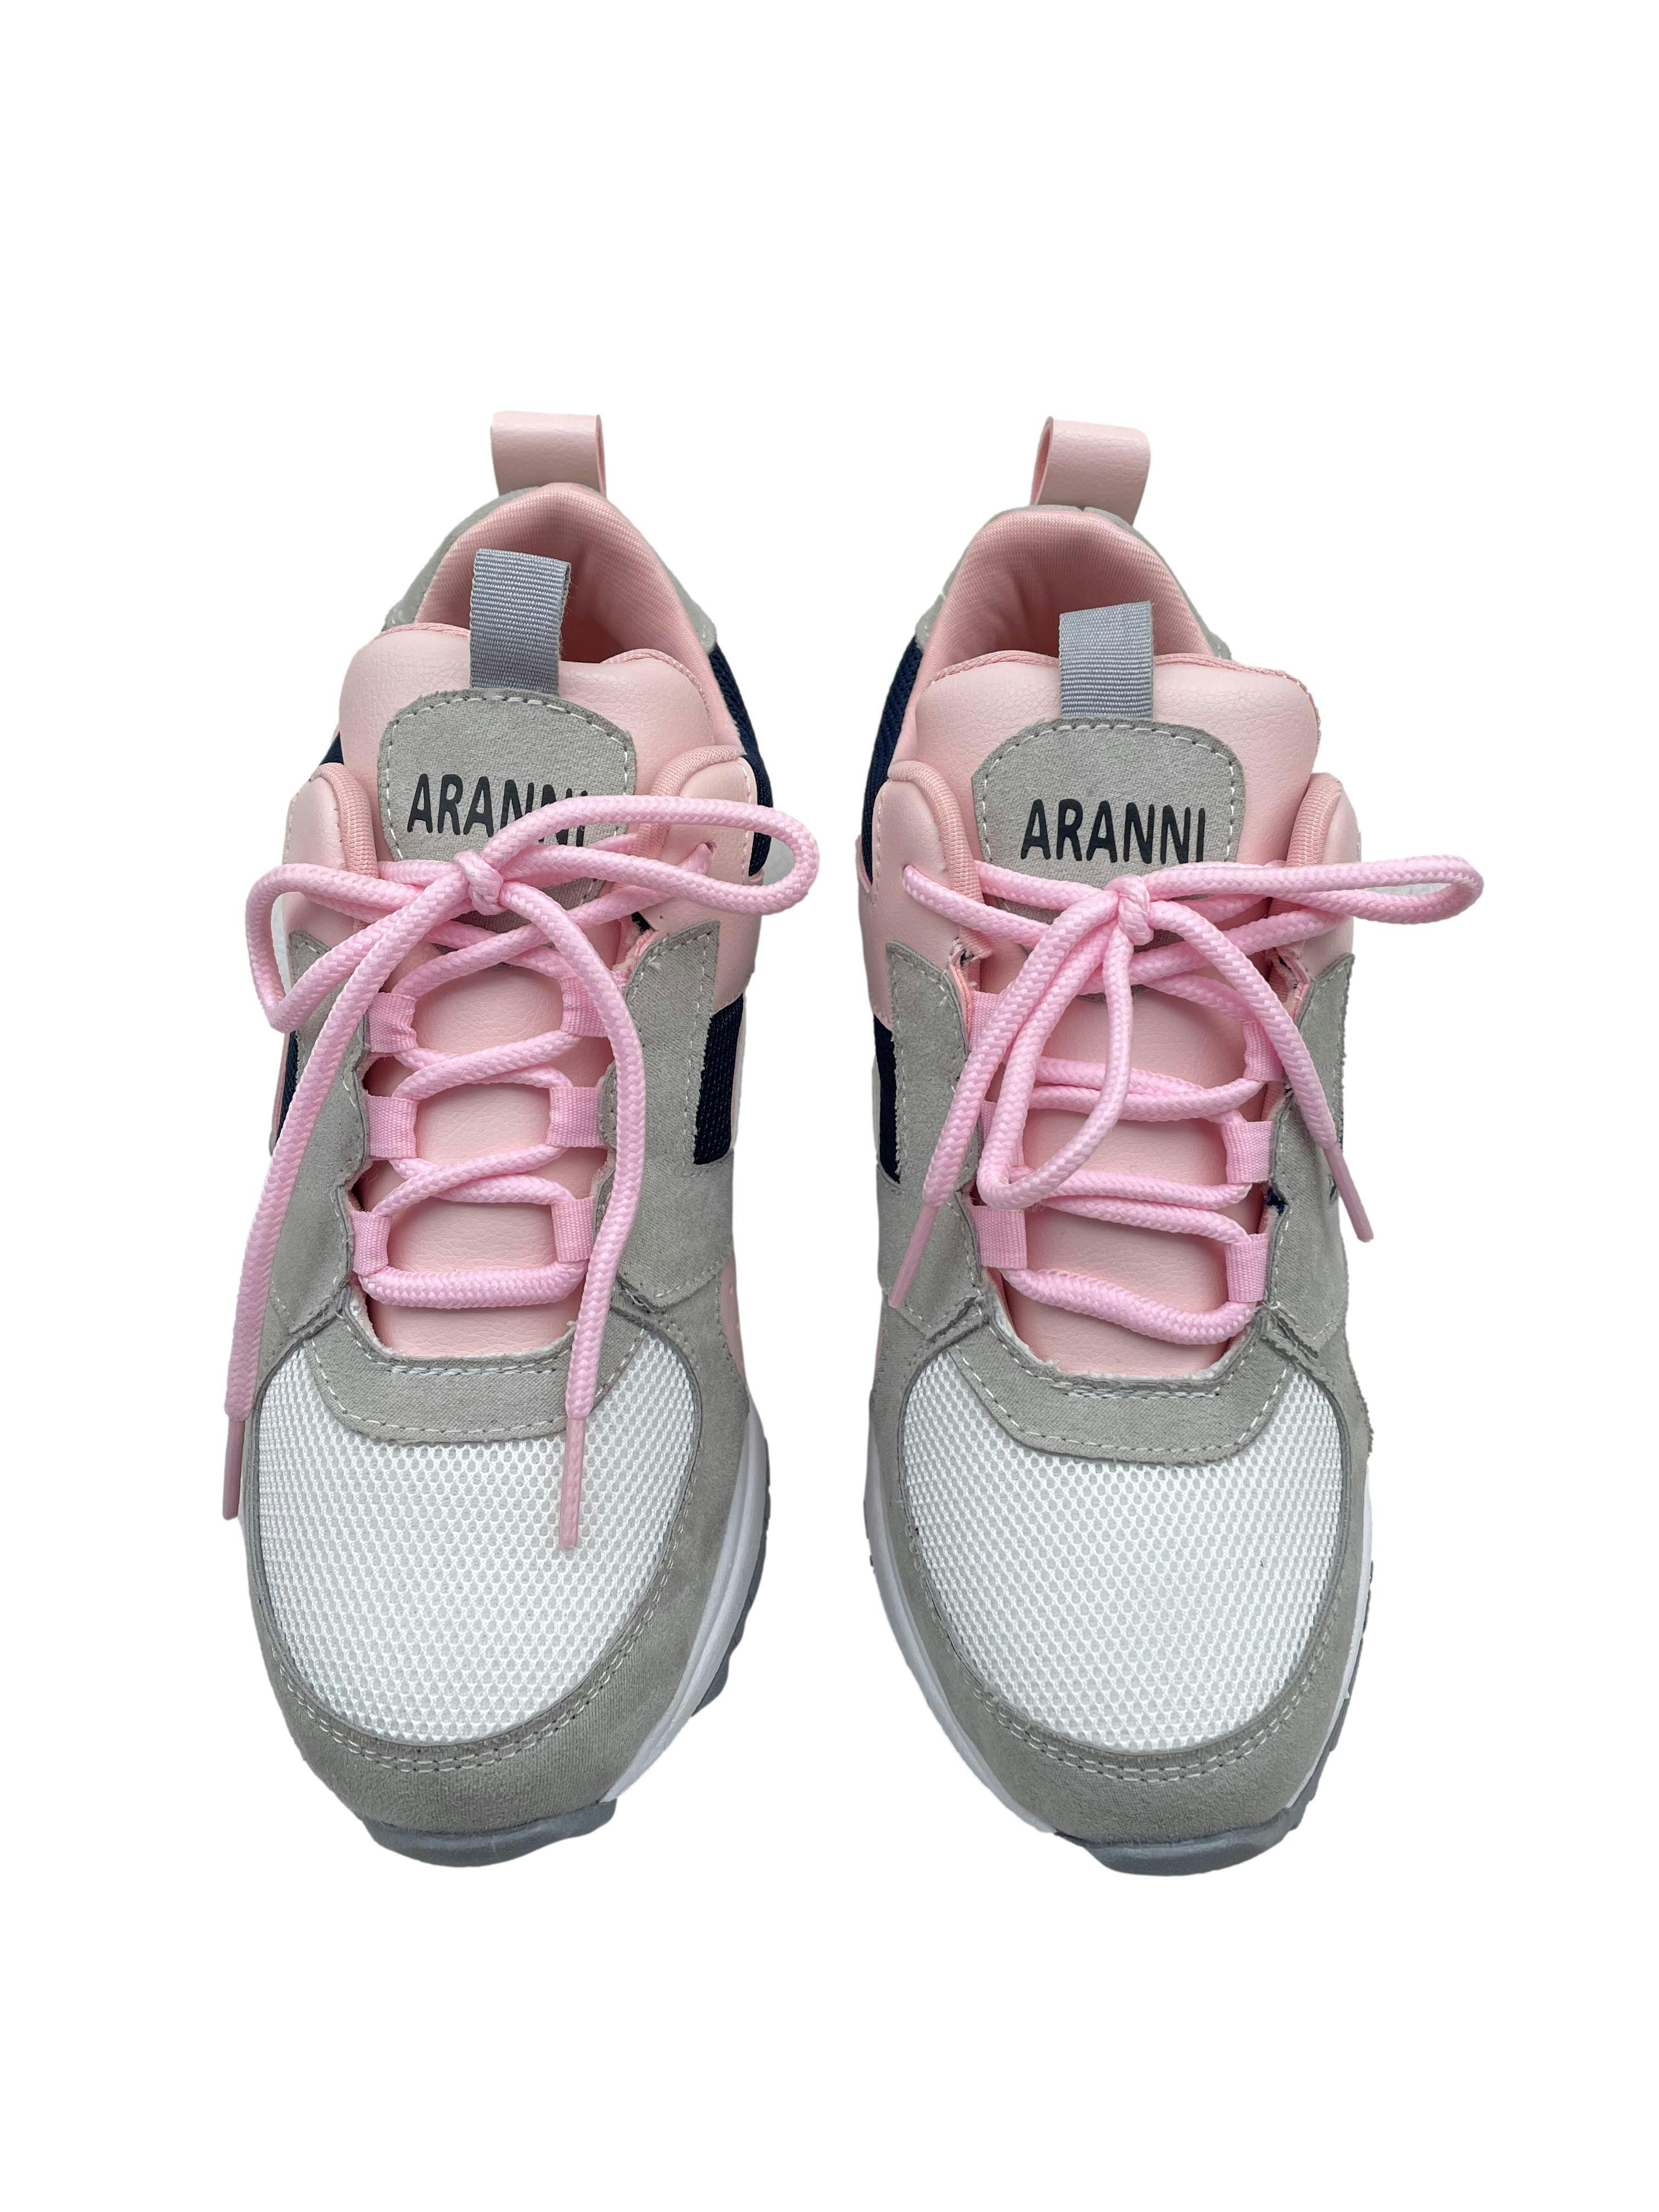 Zapatillas Aranni  en rosa azul blanco y plomo, plataforma 3cm. Estado Como Nuevo.